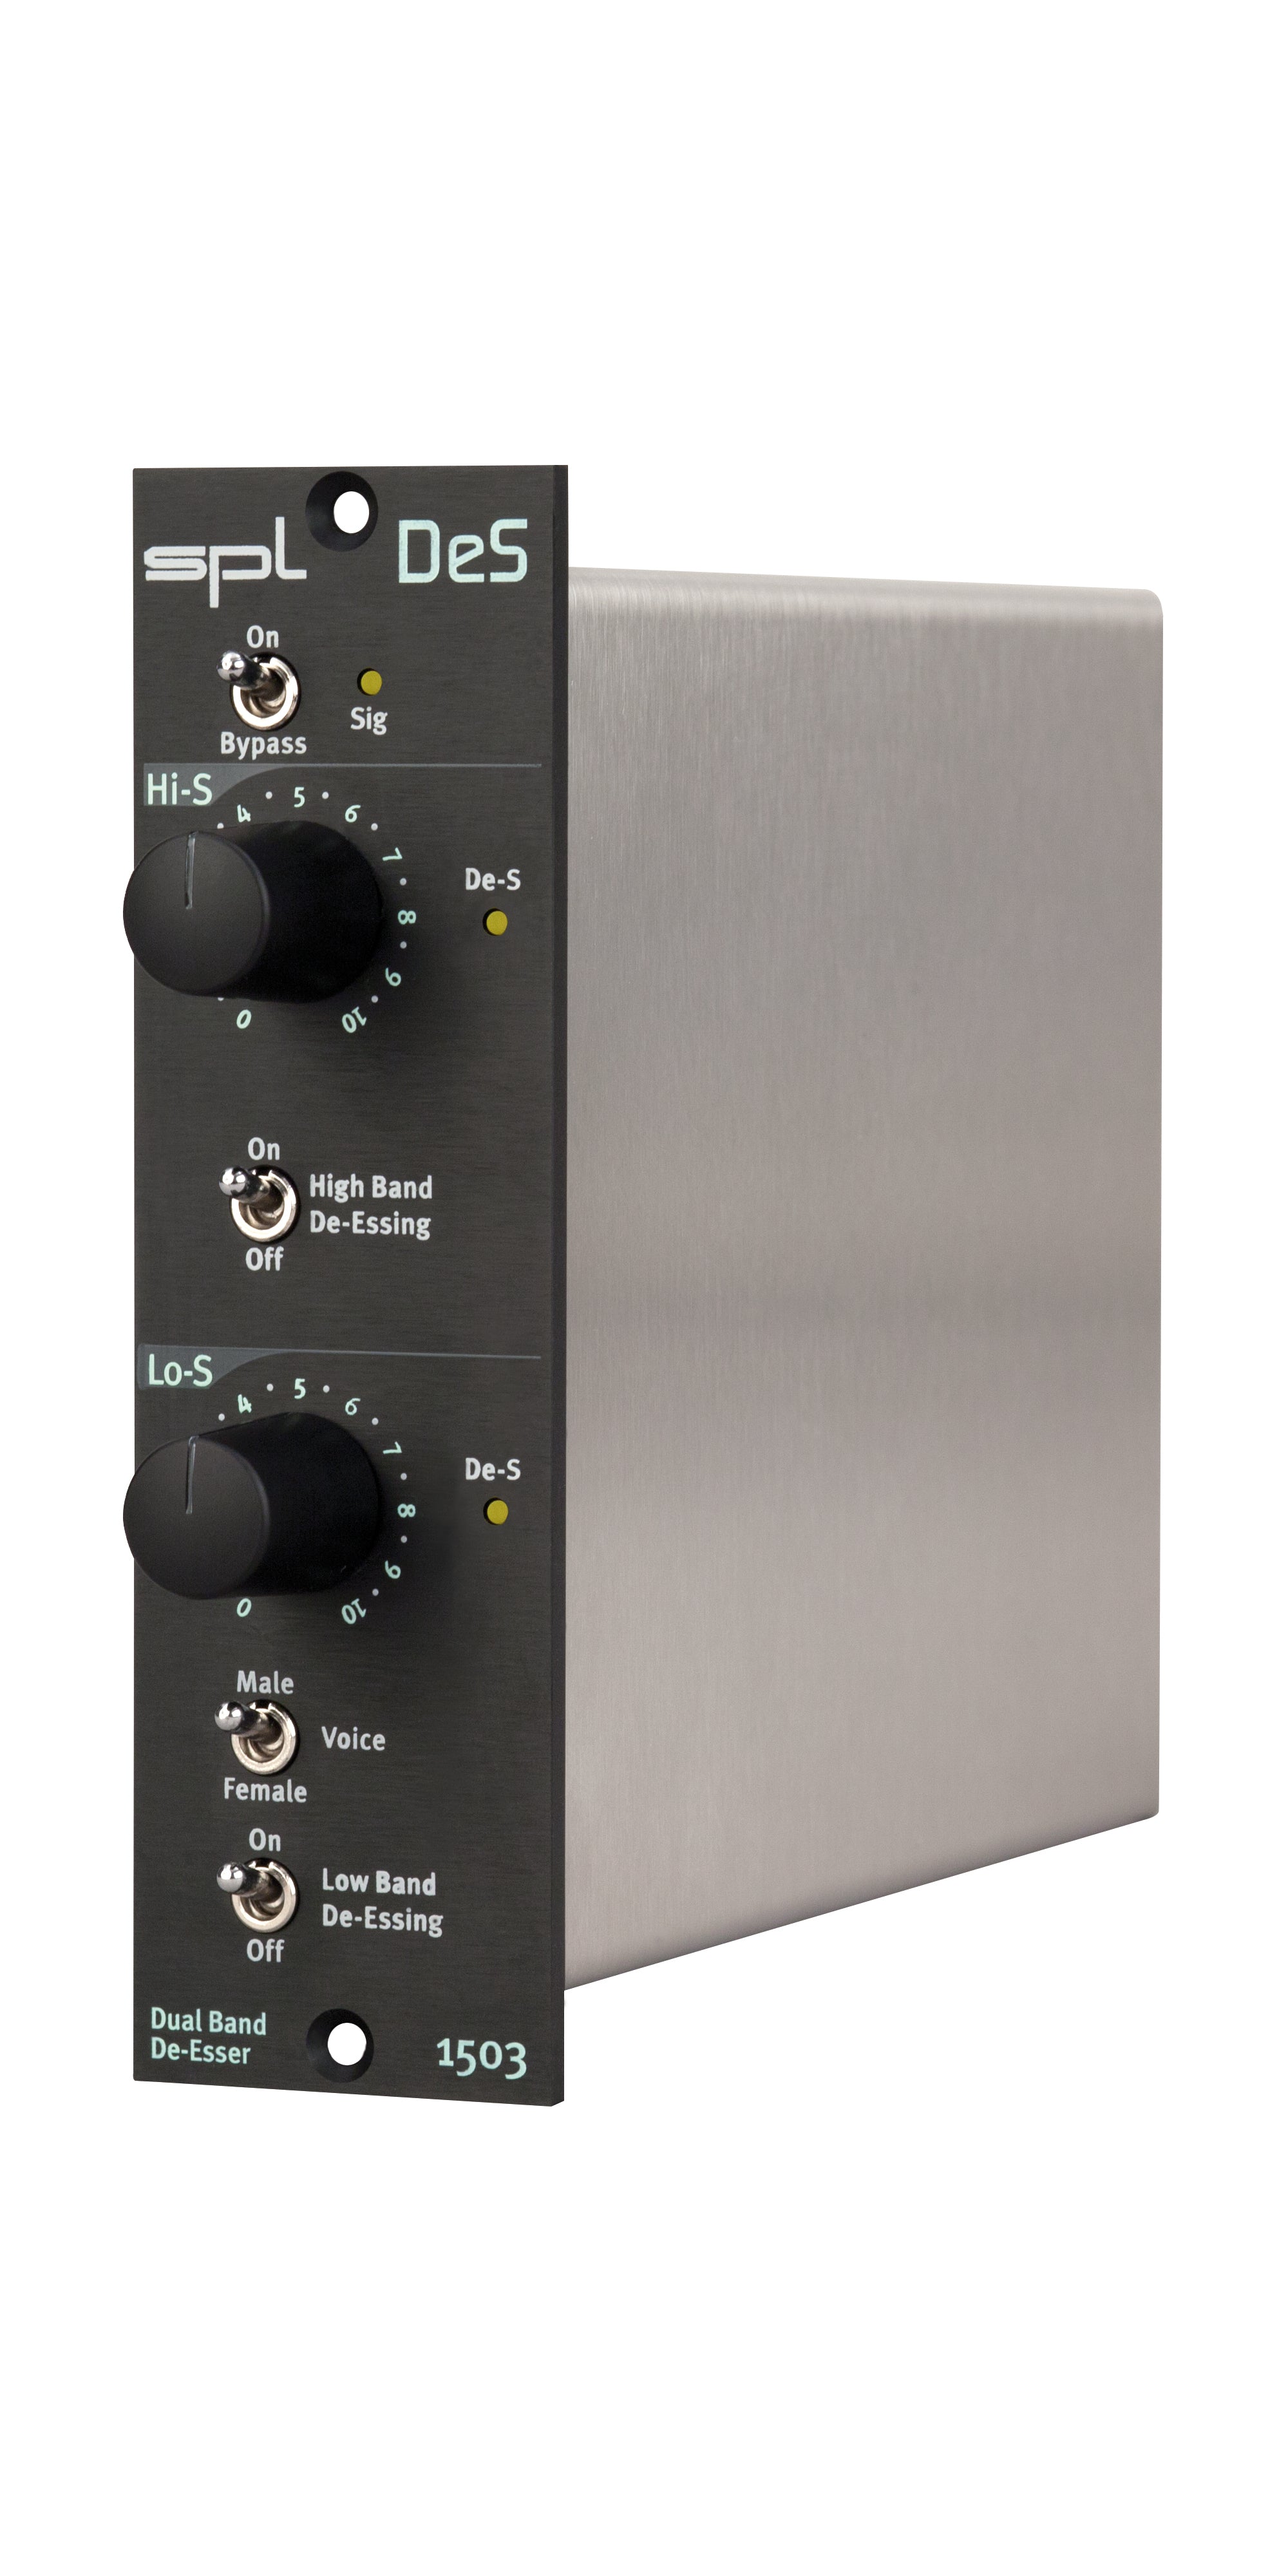 SPL DeS 500 Series module - 500 Series - Professional Audio Design, Inc